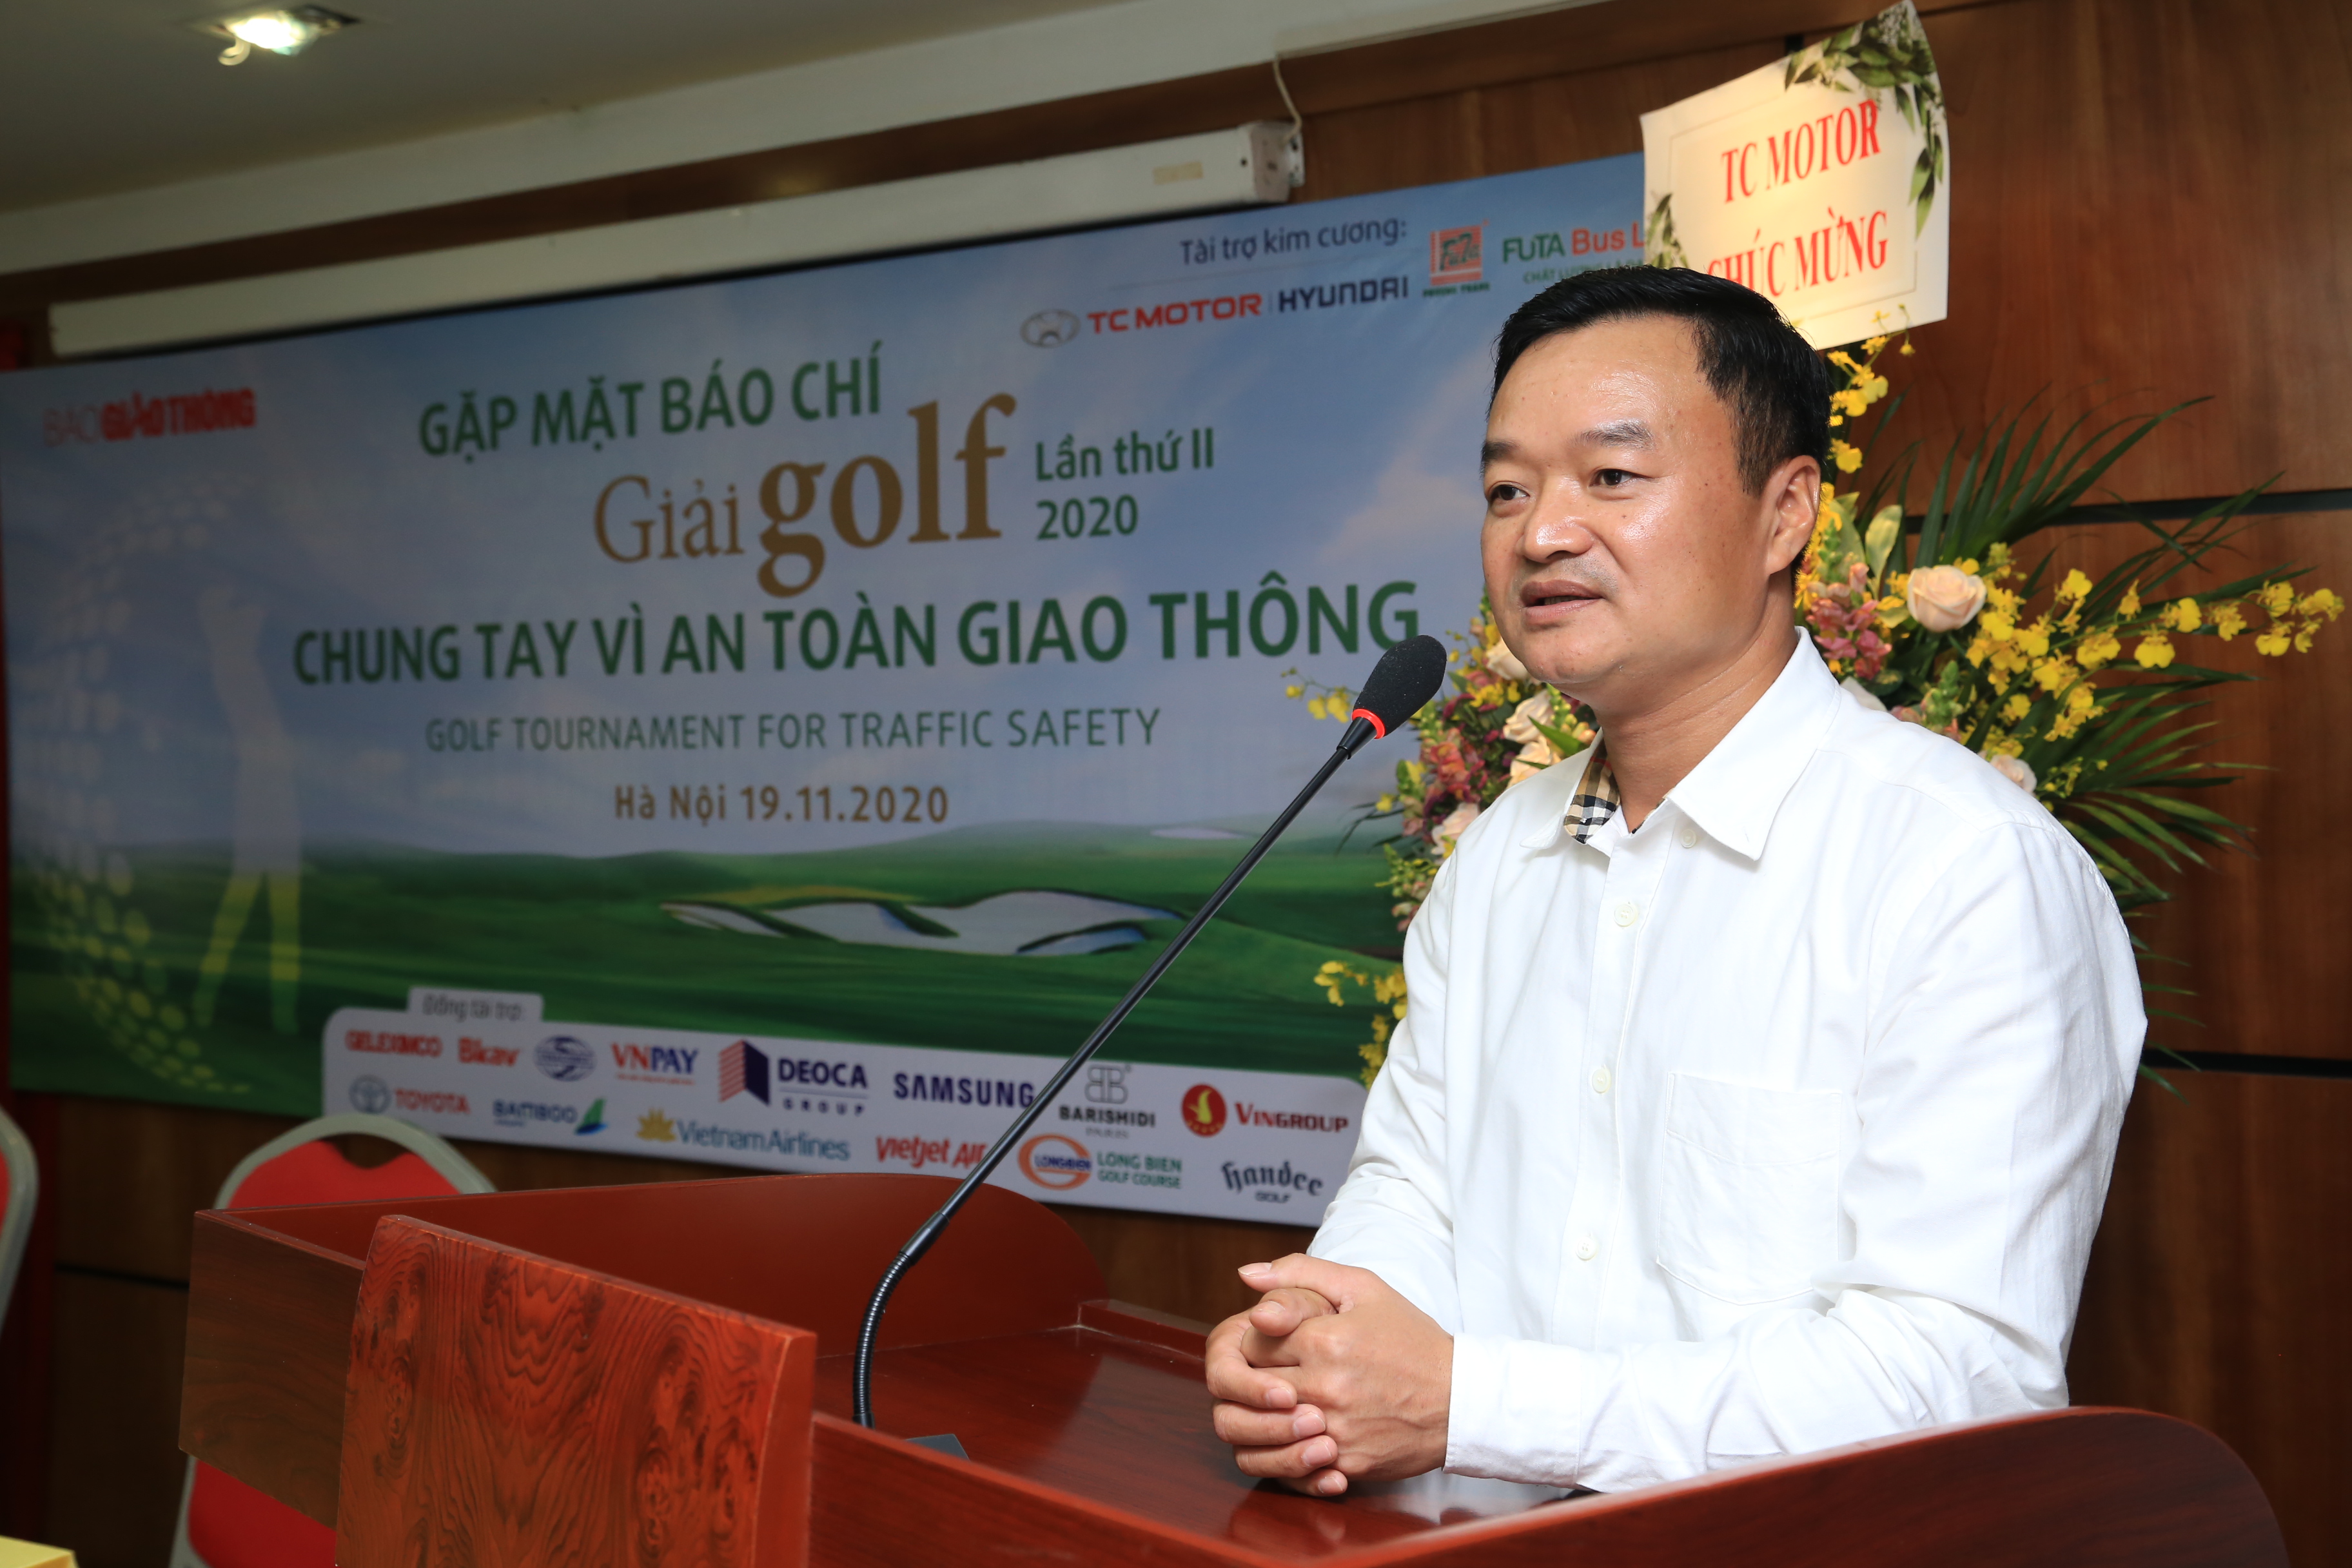 Ông Nguyễn Bá Kiên - Tổng Biên tập báo Giao thông phát biểu tại buổi gặp mặt báo chí